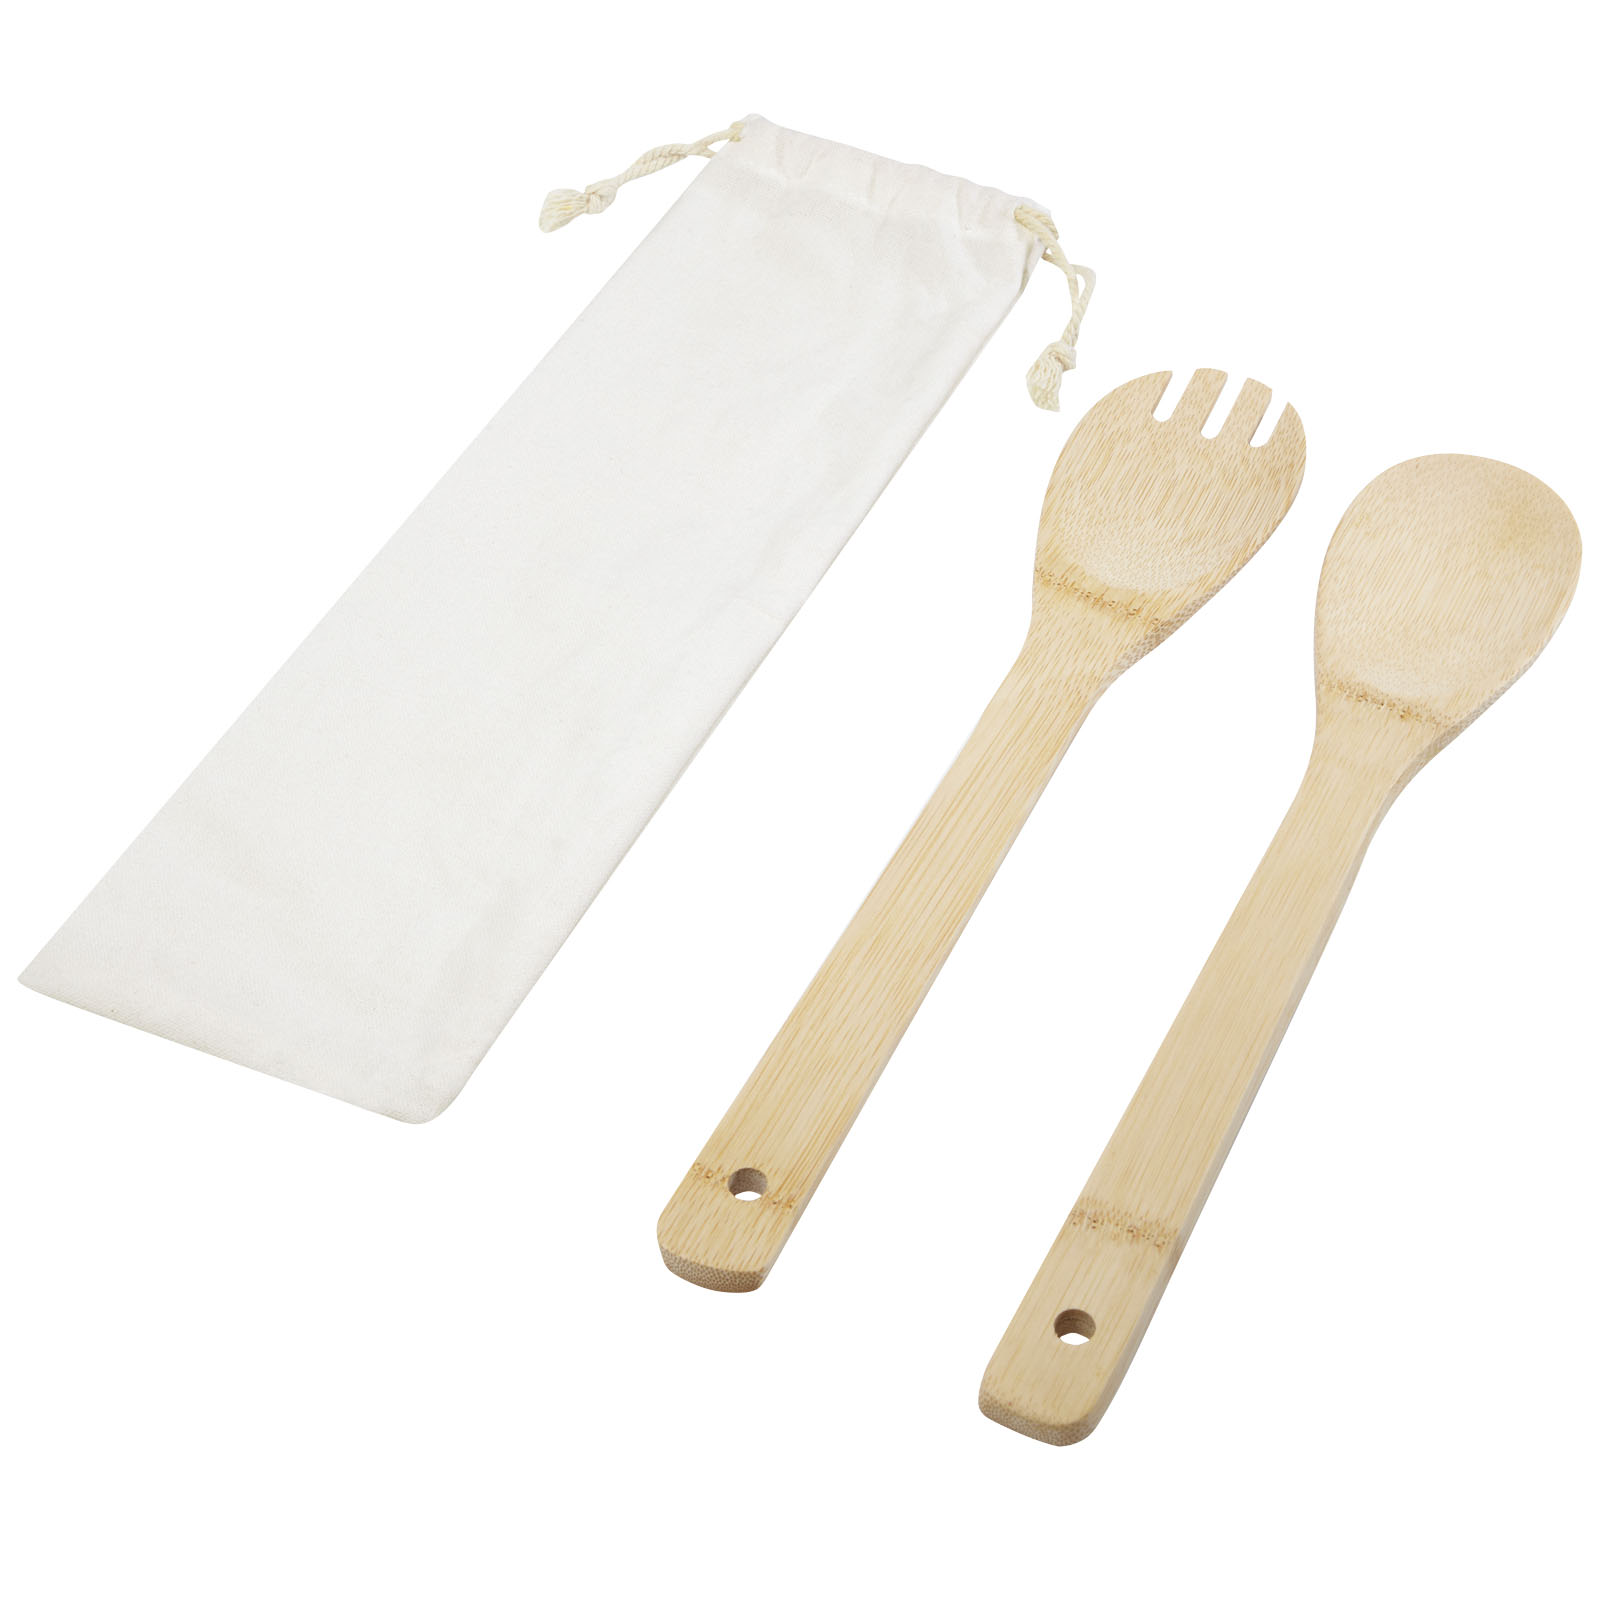 Bamboo salad spoon and fork SIGH - natural